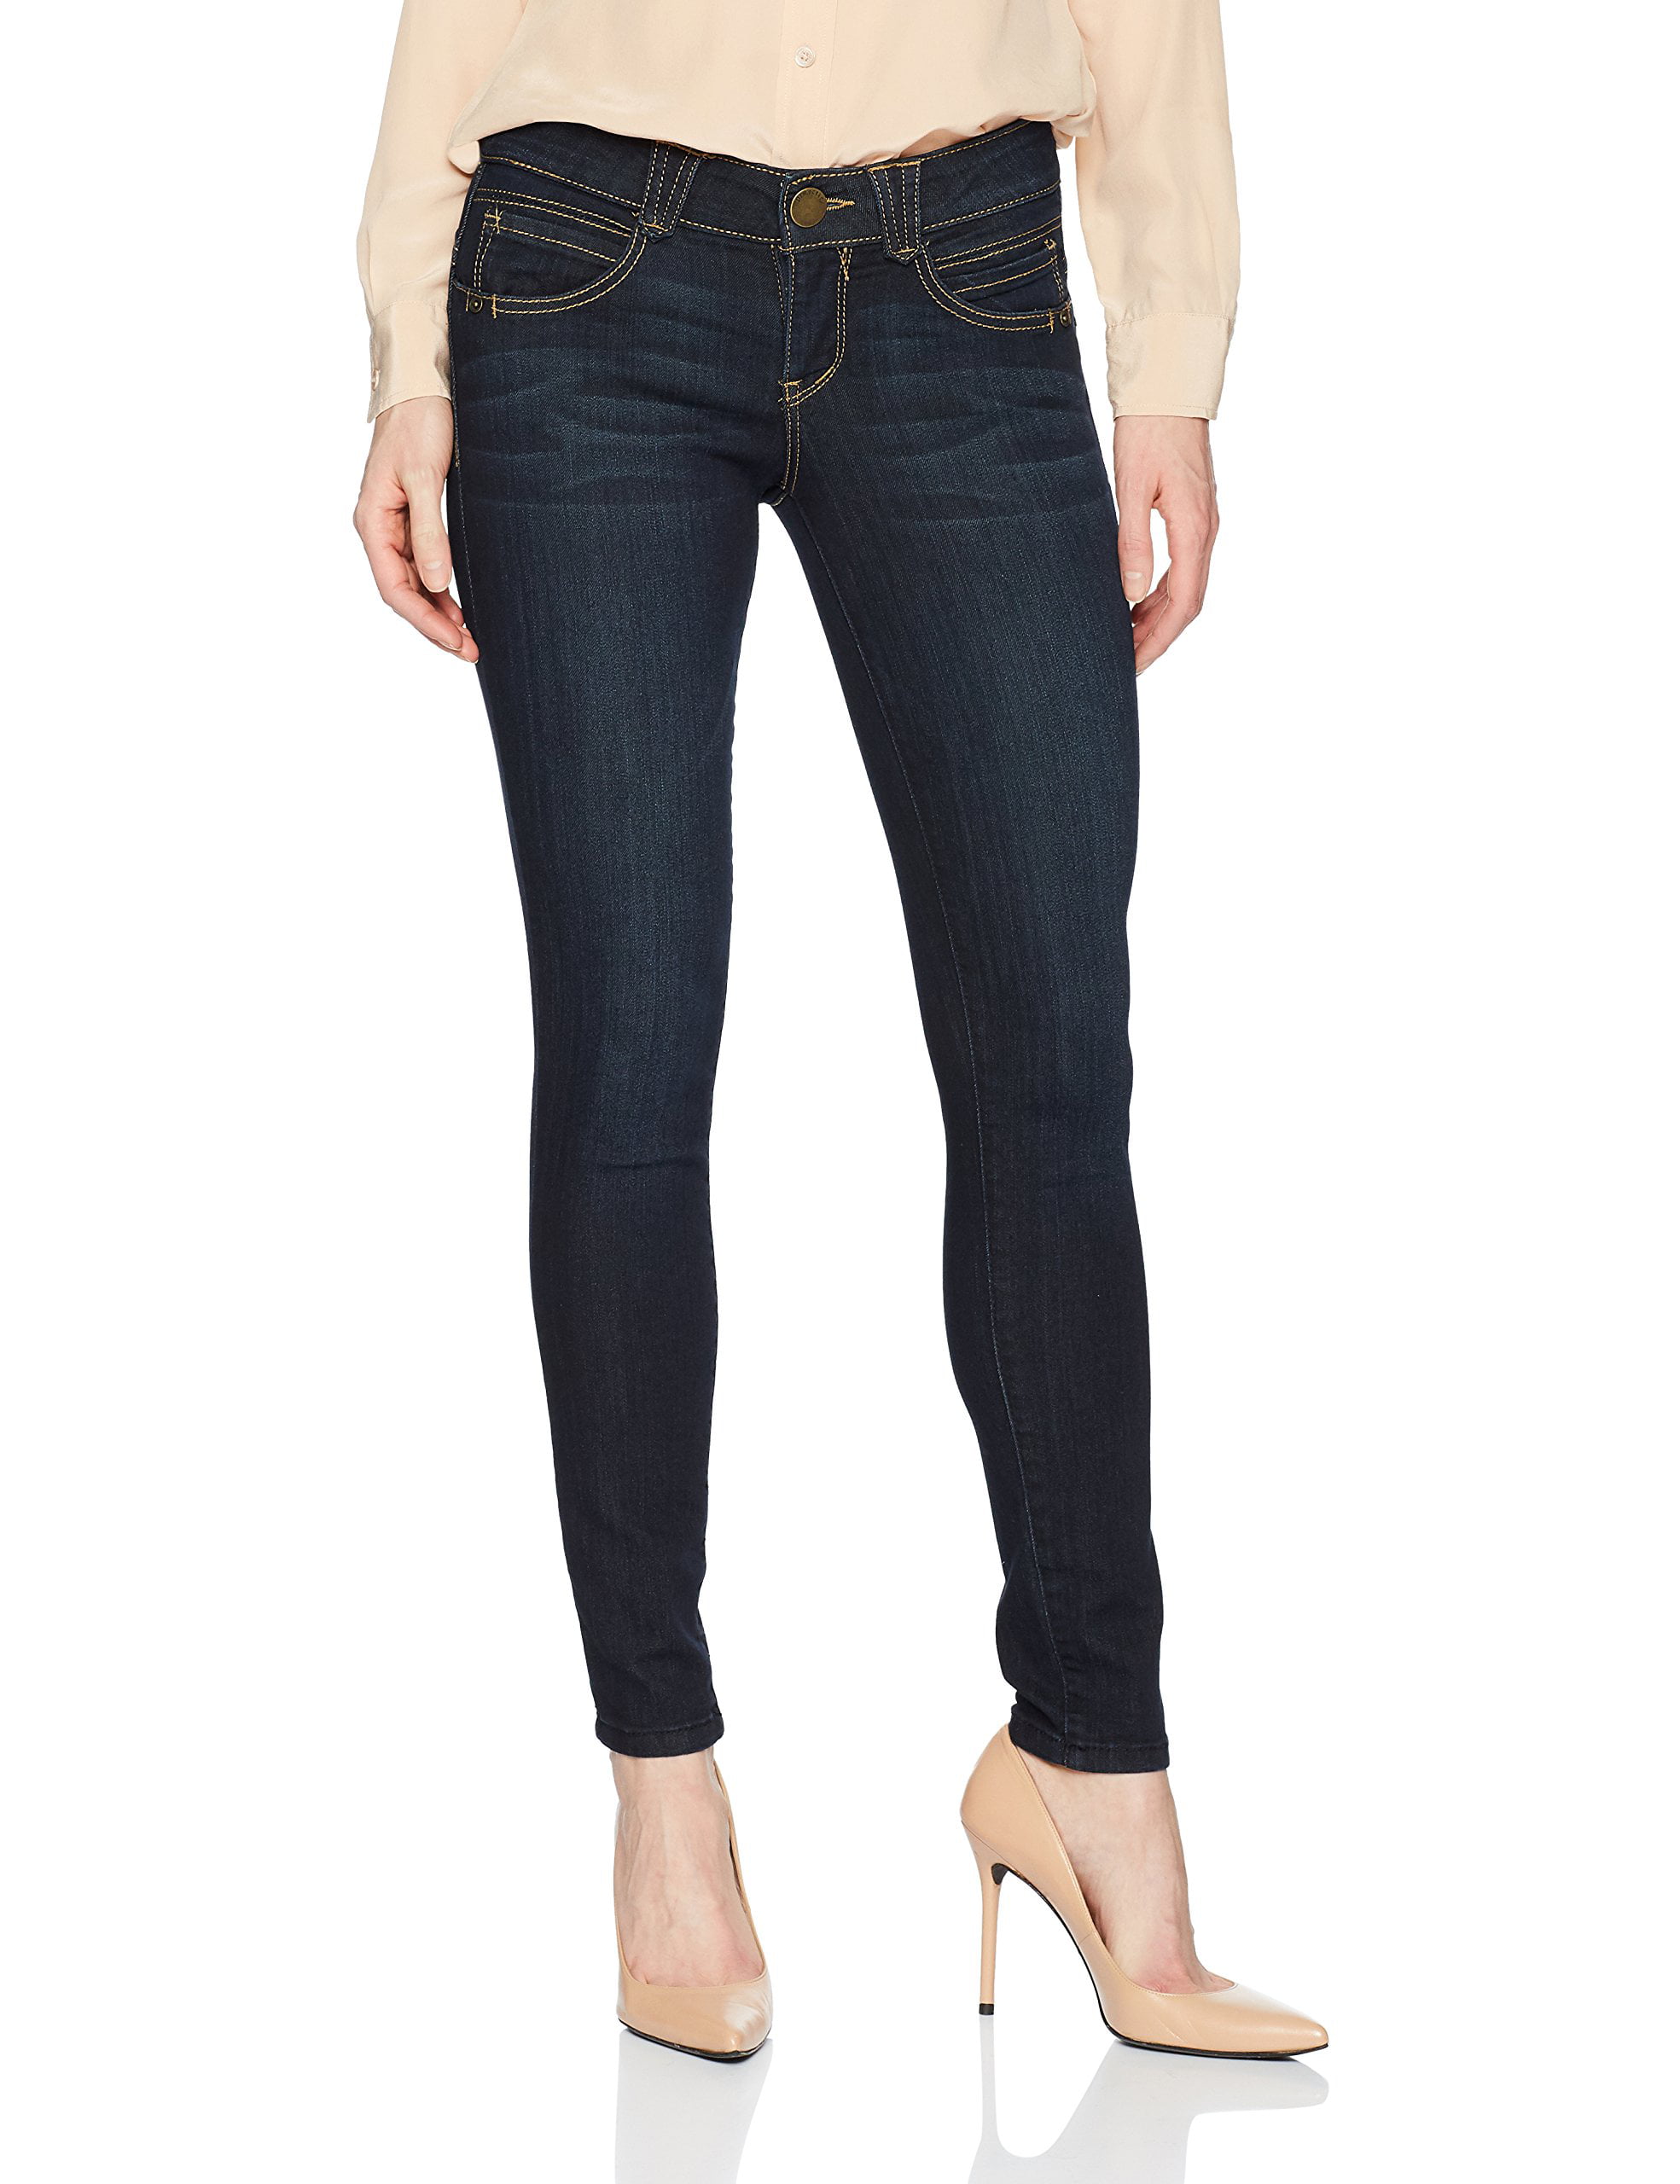 Democracy - Women's Jeans Lift Stretch Skinny Slim Fit 18 - Walmart.com ...